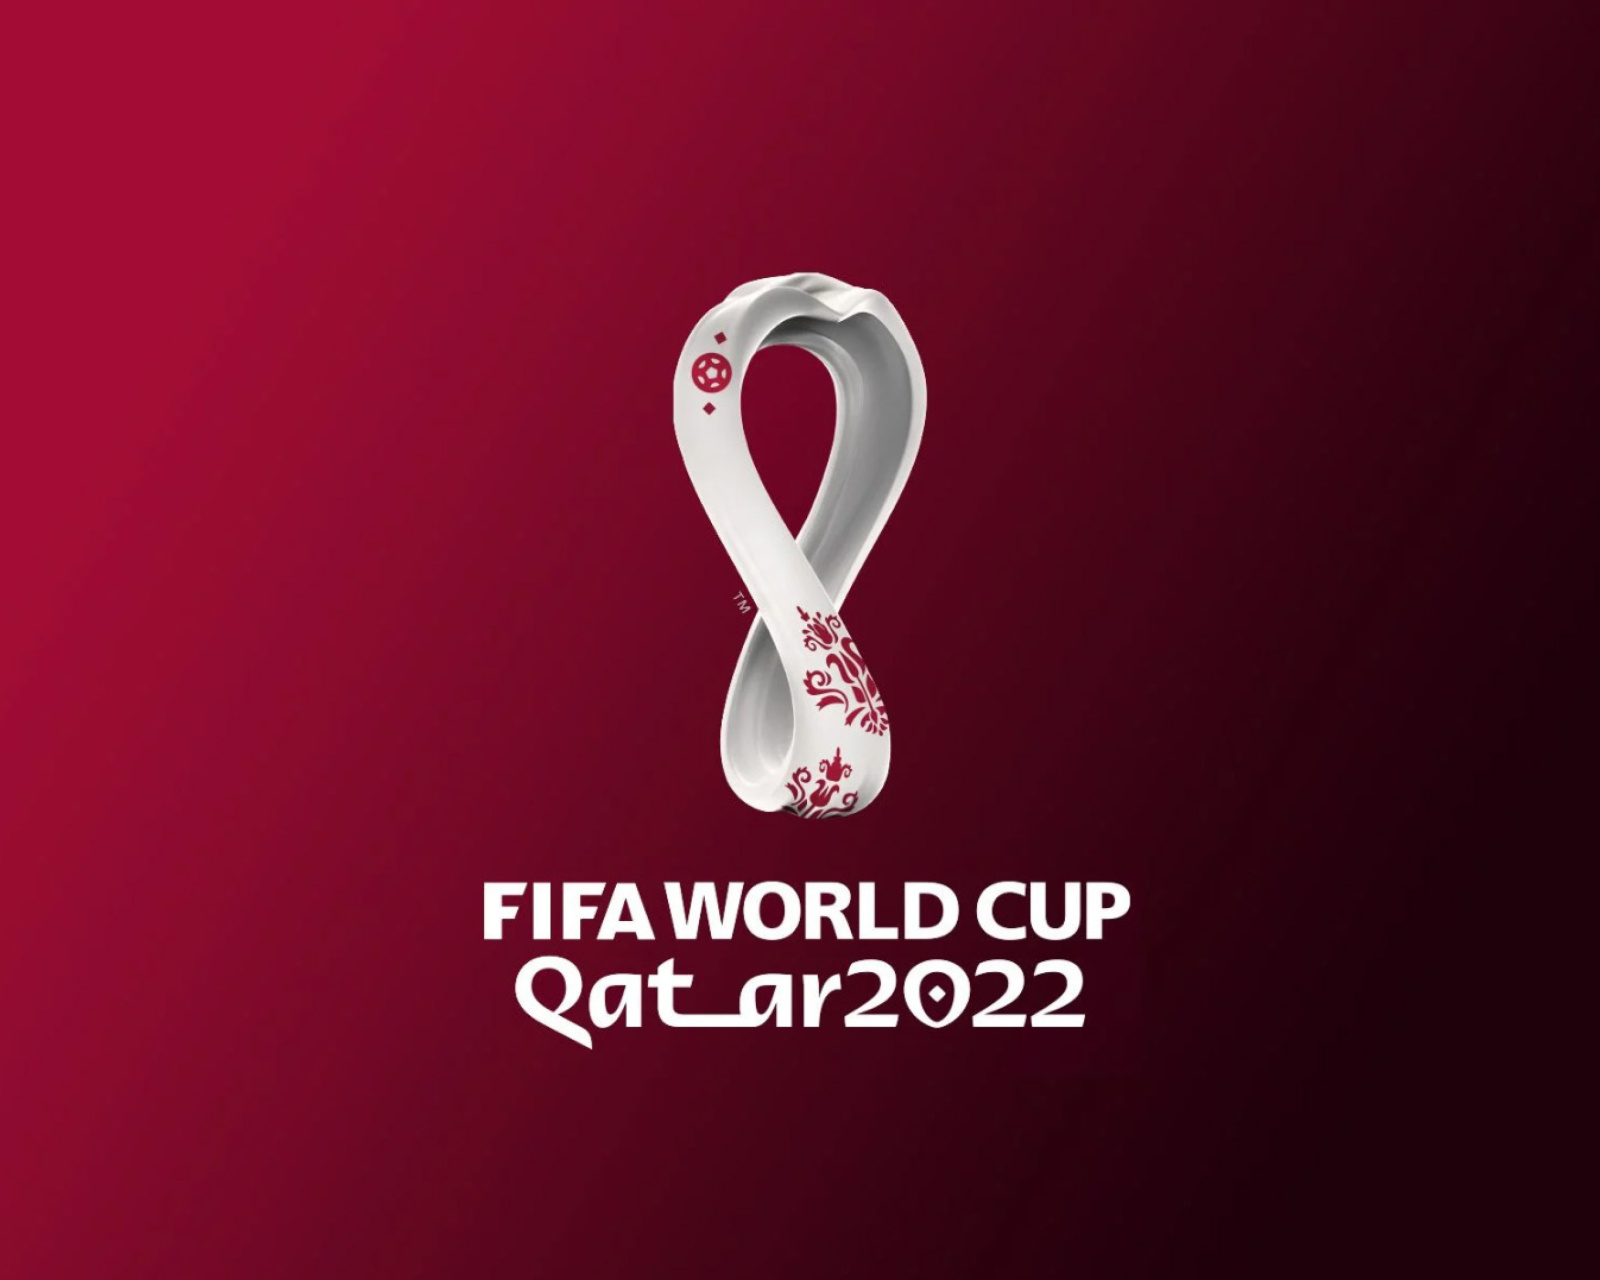 Das World Cup Qatar 2022 Wallpaper 1600x1280